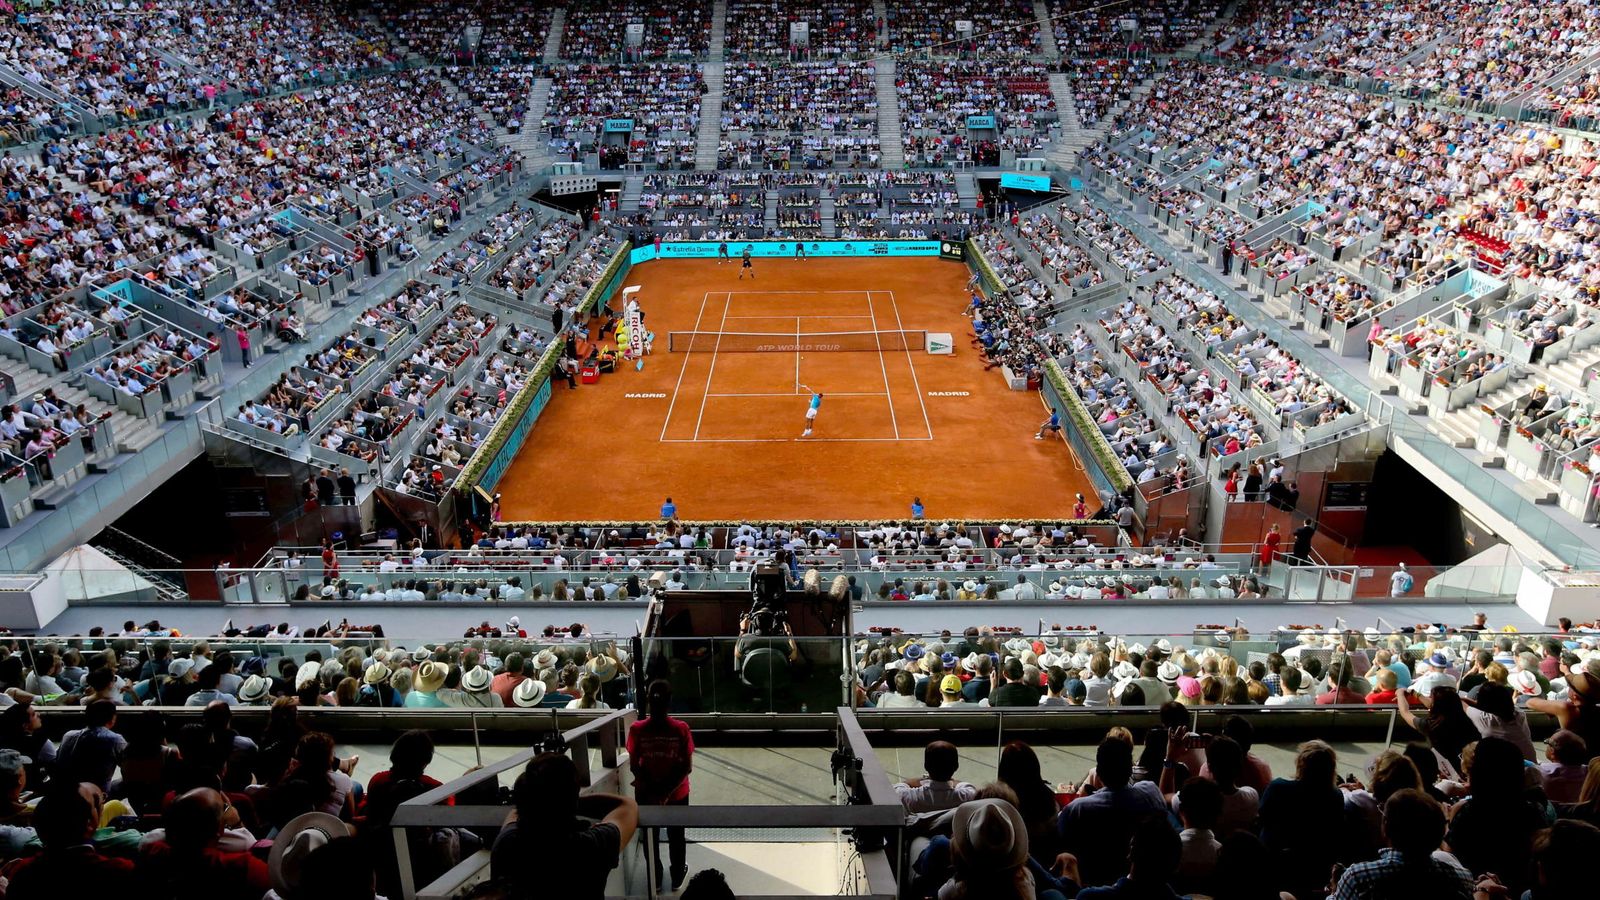 Foto: Vista general de la Caja Mágica durante la final que disputaron Andy Murray y Rafa Nadal el pasado mayo. (EFE)